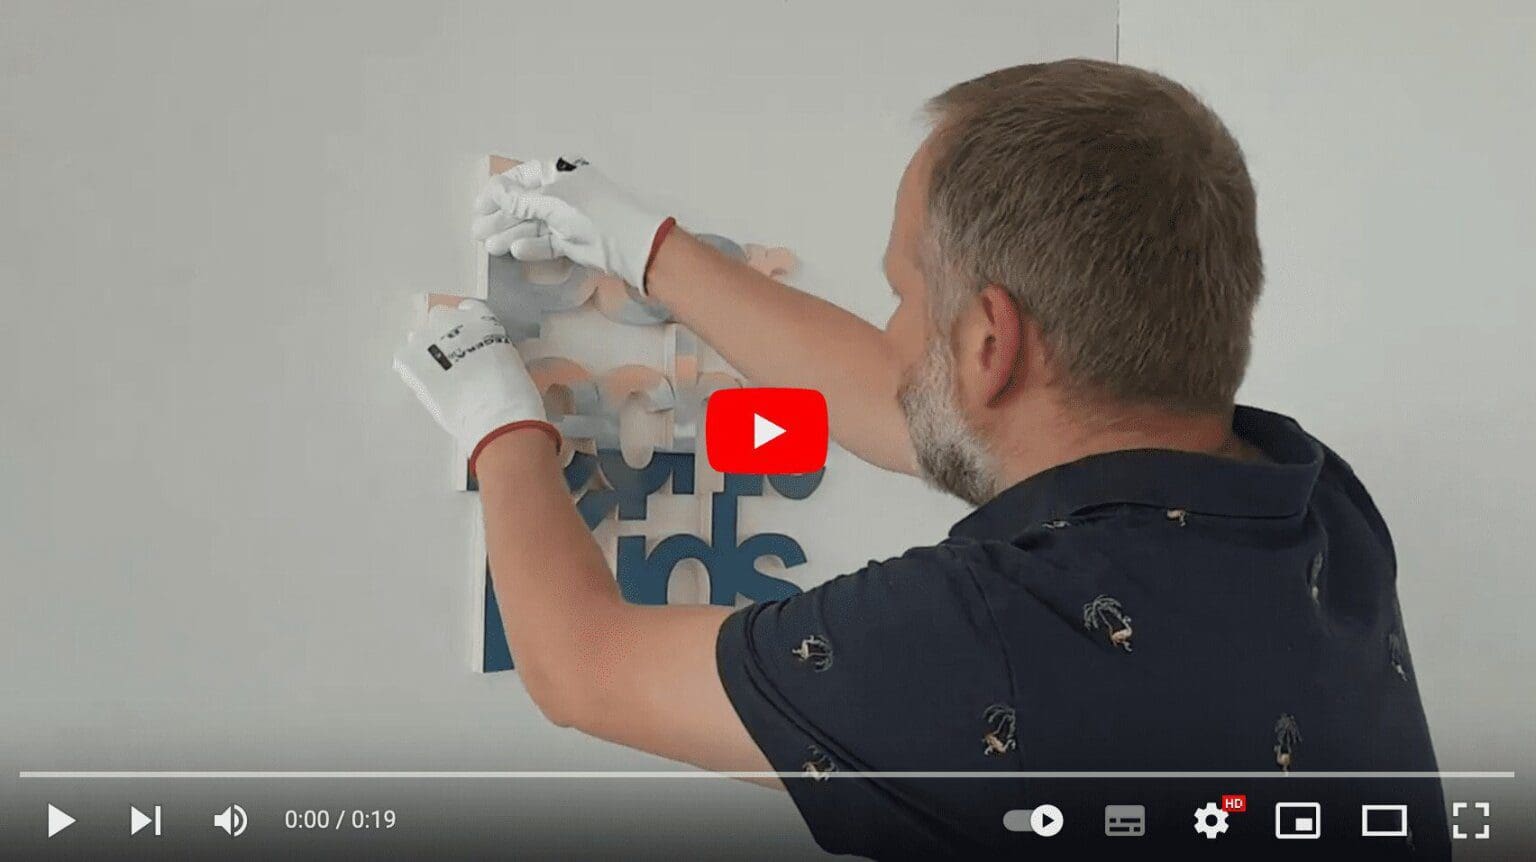 Videoinstructie hoe het werk op te hangen met dubbelzijdig tape